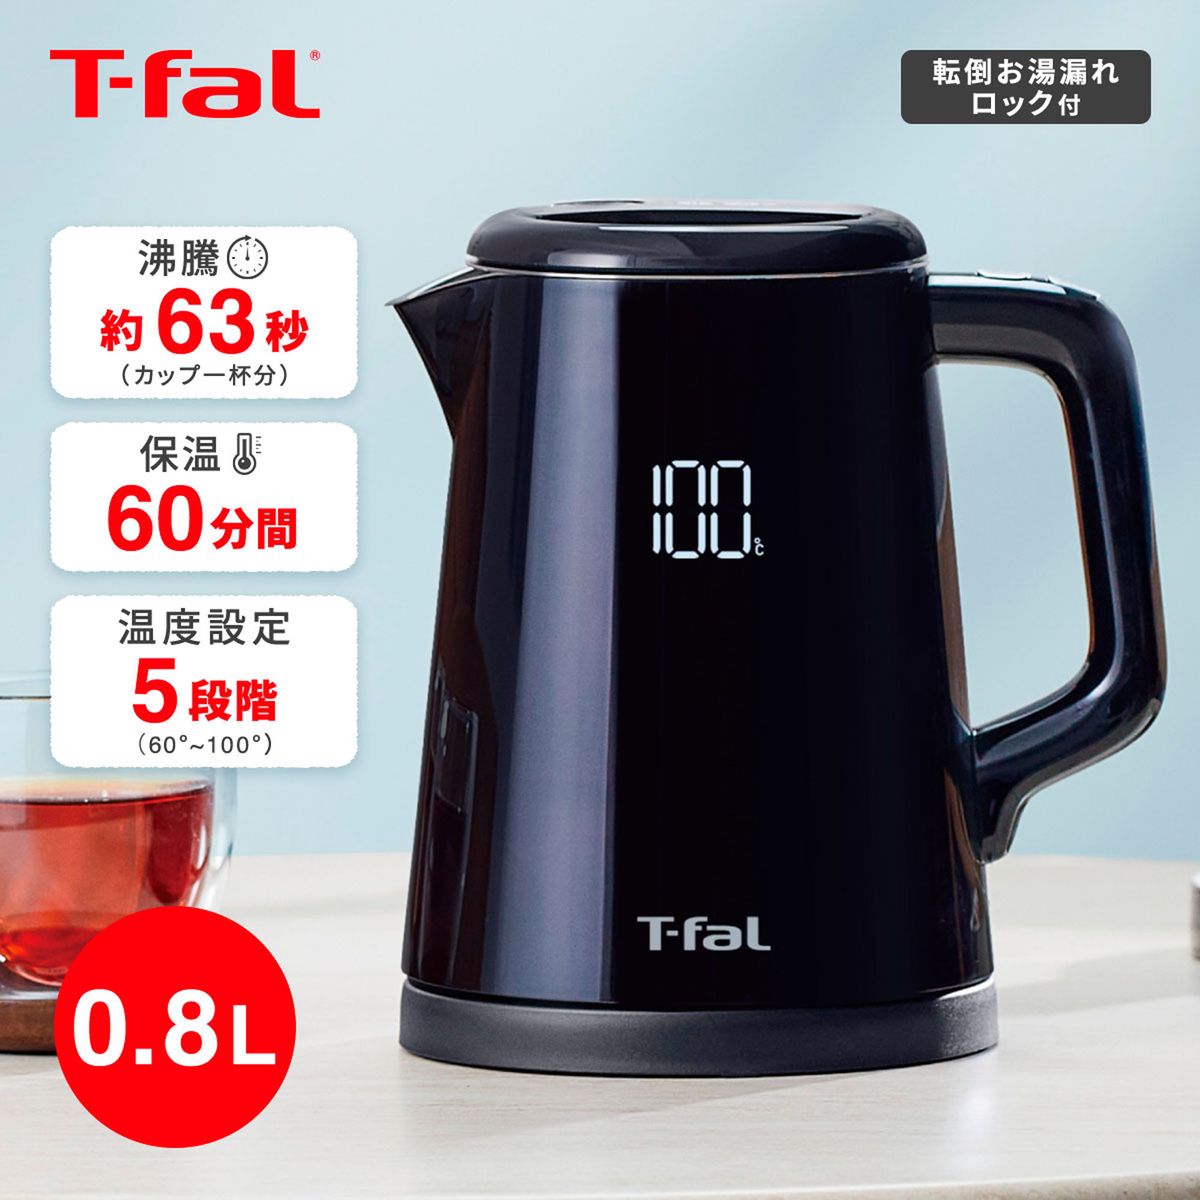 T-fal 電気ケトル ディスプレイコントロール 0.8L ブラック ポット 湯沸かし 5段階温度調節 保温 ステンレス